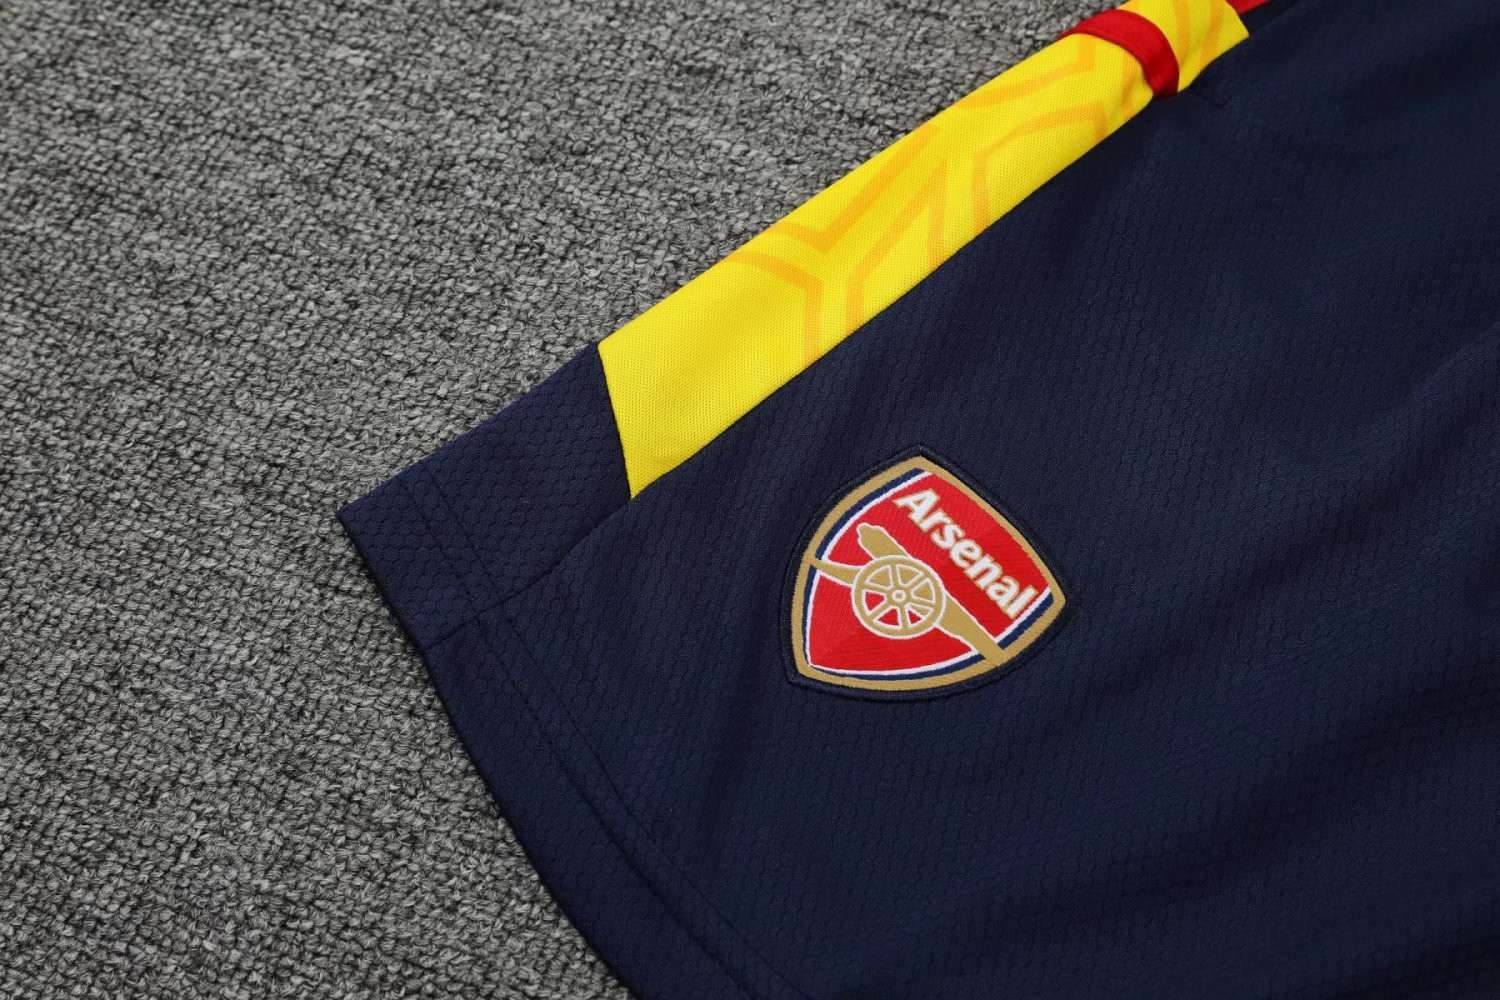 Arsenal 2022-23 Navy Soccer Jersey + Short Replica Mens